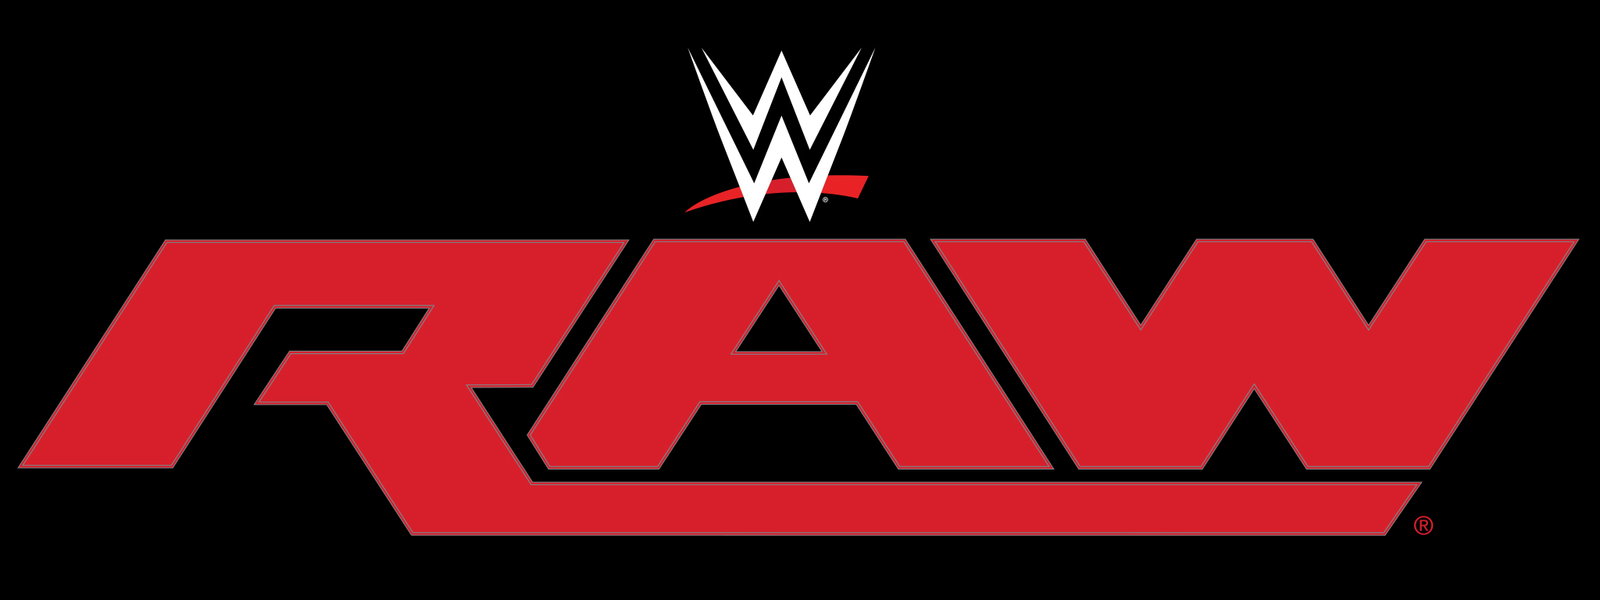 WWE Monday Night RAW 2016 OWW